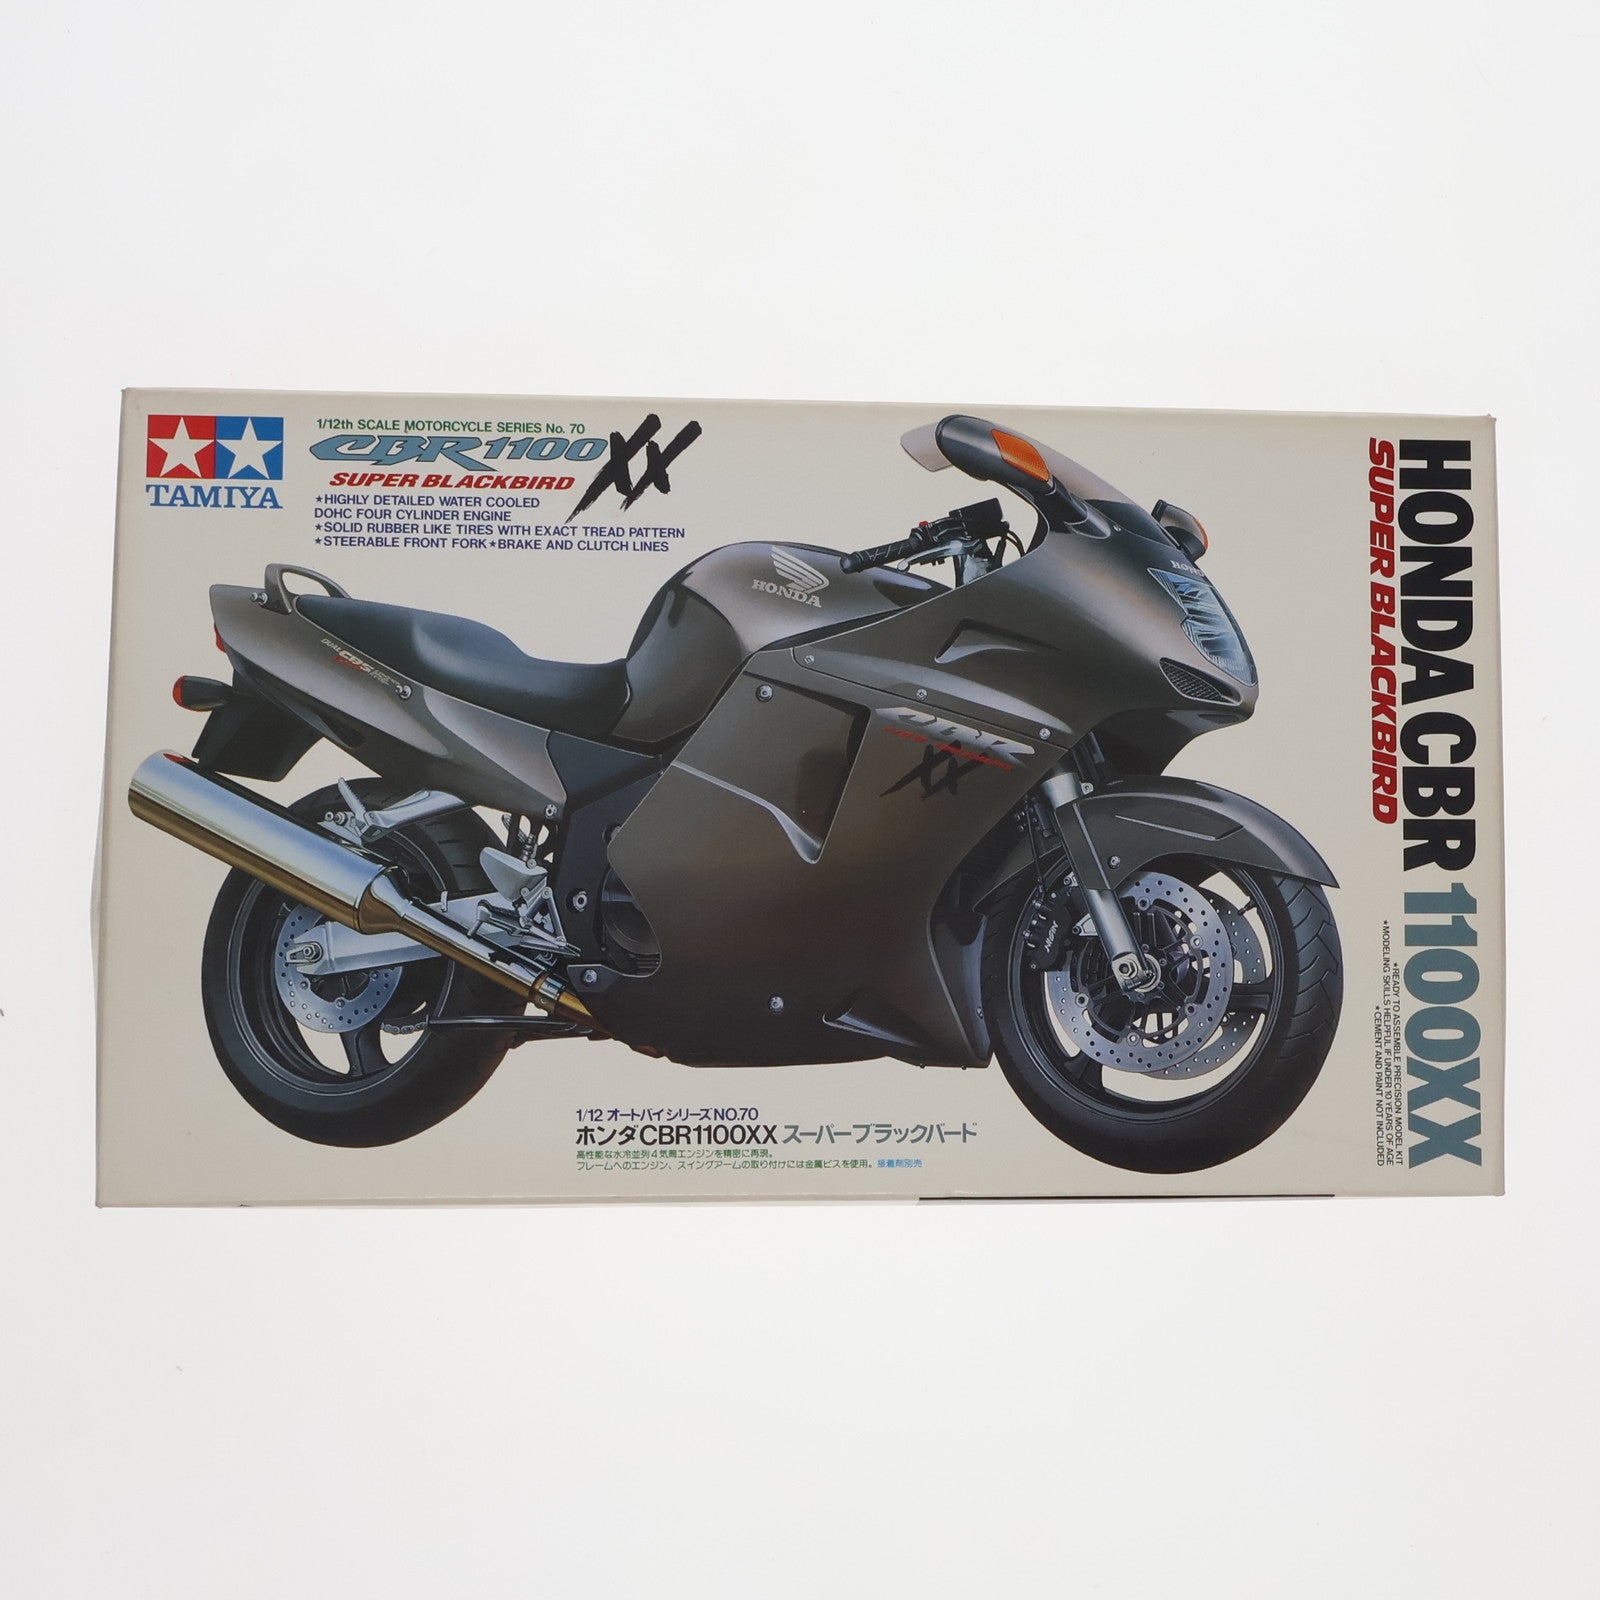 【中古即納】[PTM]オートバイシリーズ No.70 1/12 Honda(ホンダ) CBR1100XXスーパーブラックバード プラモデル(14070) タミヤ(19971130)